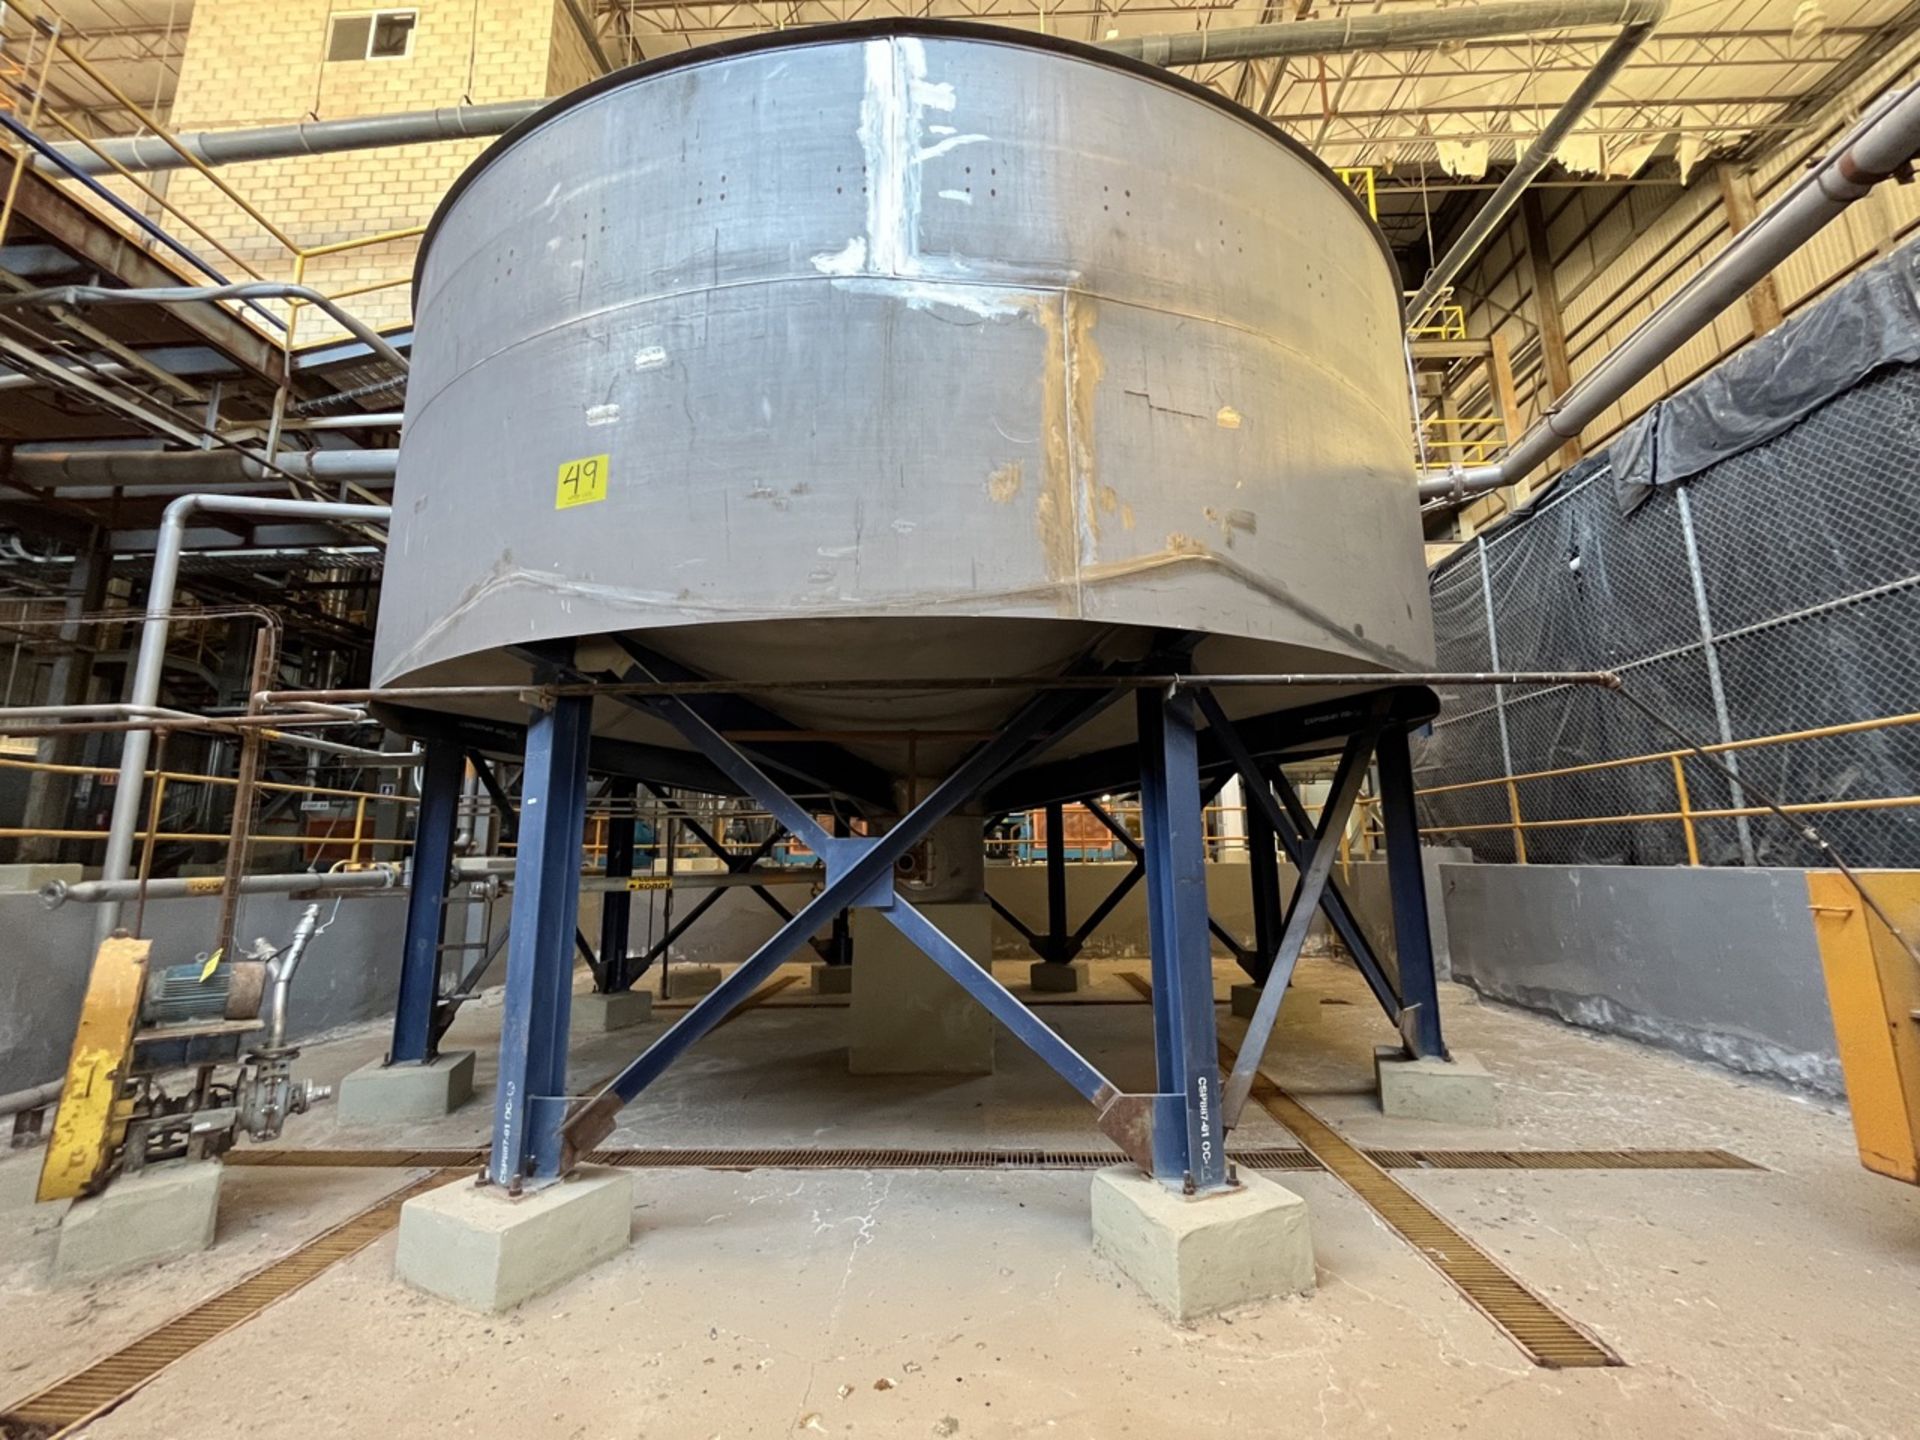 Stainless steel storage tank, measuring approximately 7 meters in diameter x 5.50 meters in height